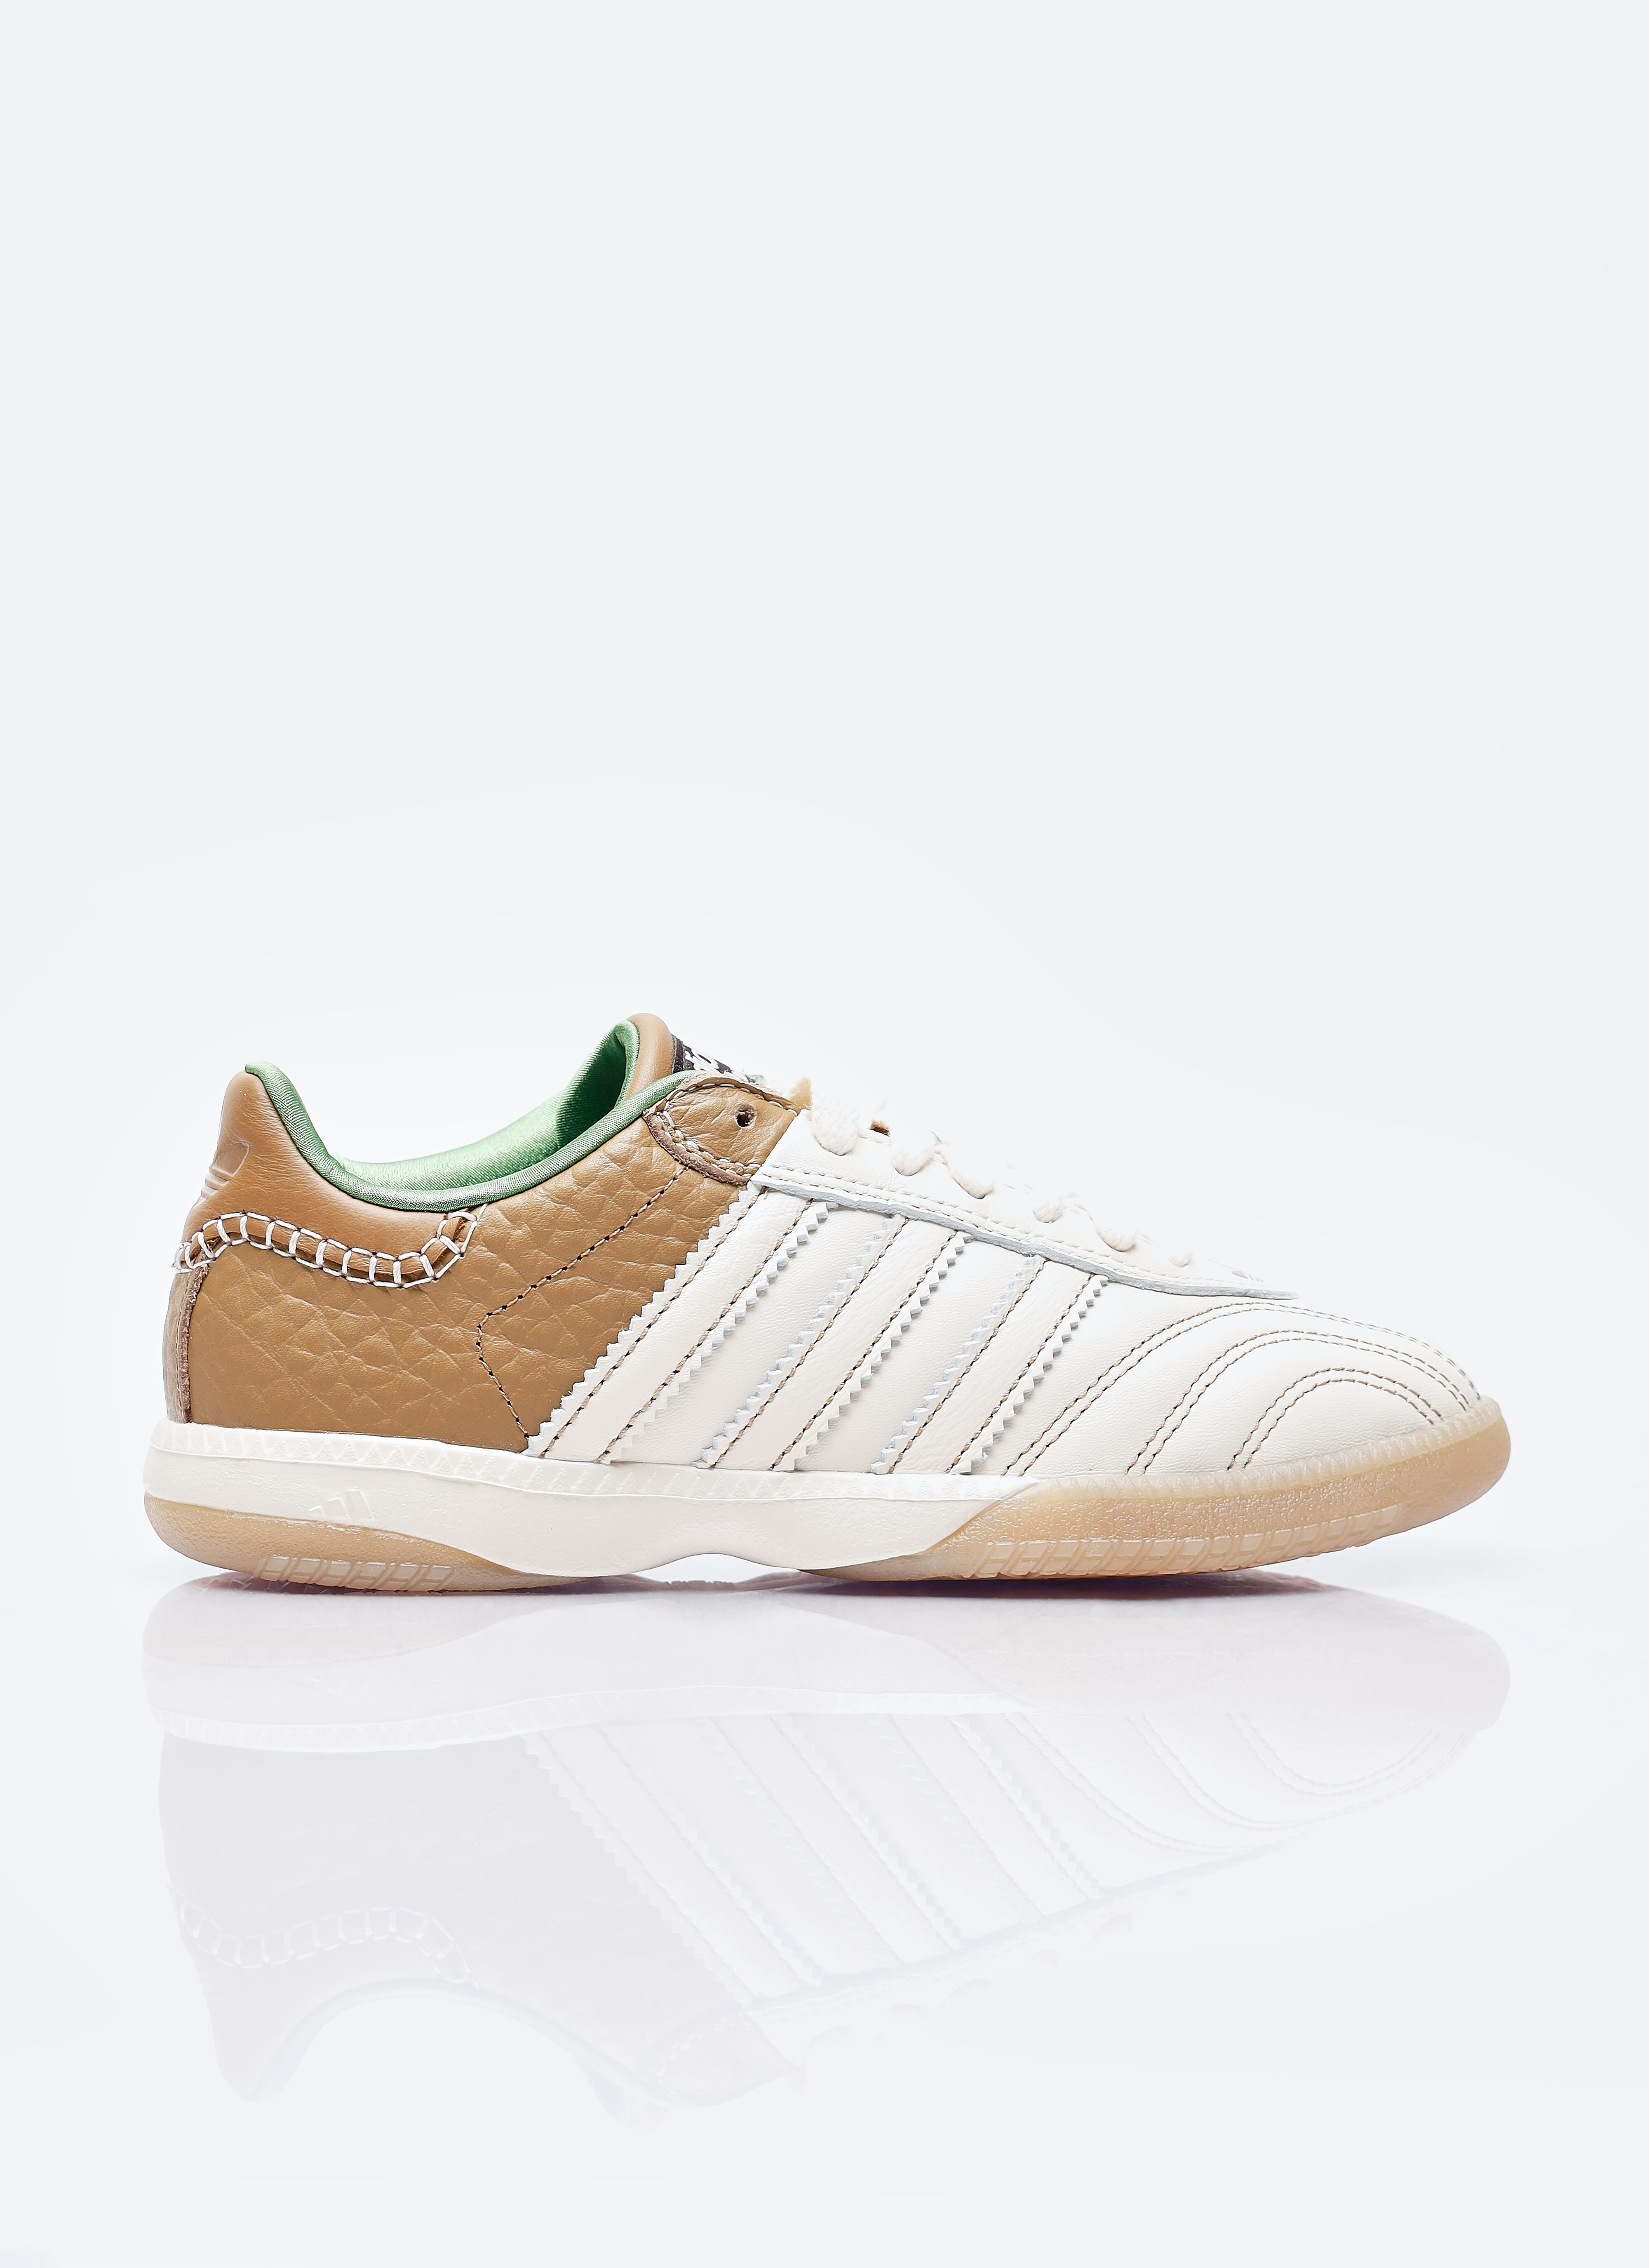 adidas by Wales Bonner Samba Sneakers Green awb0357001